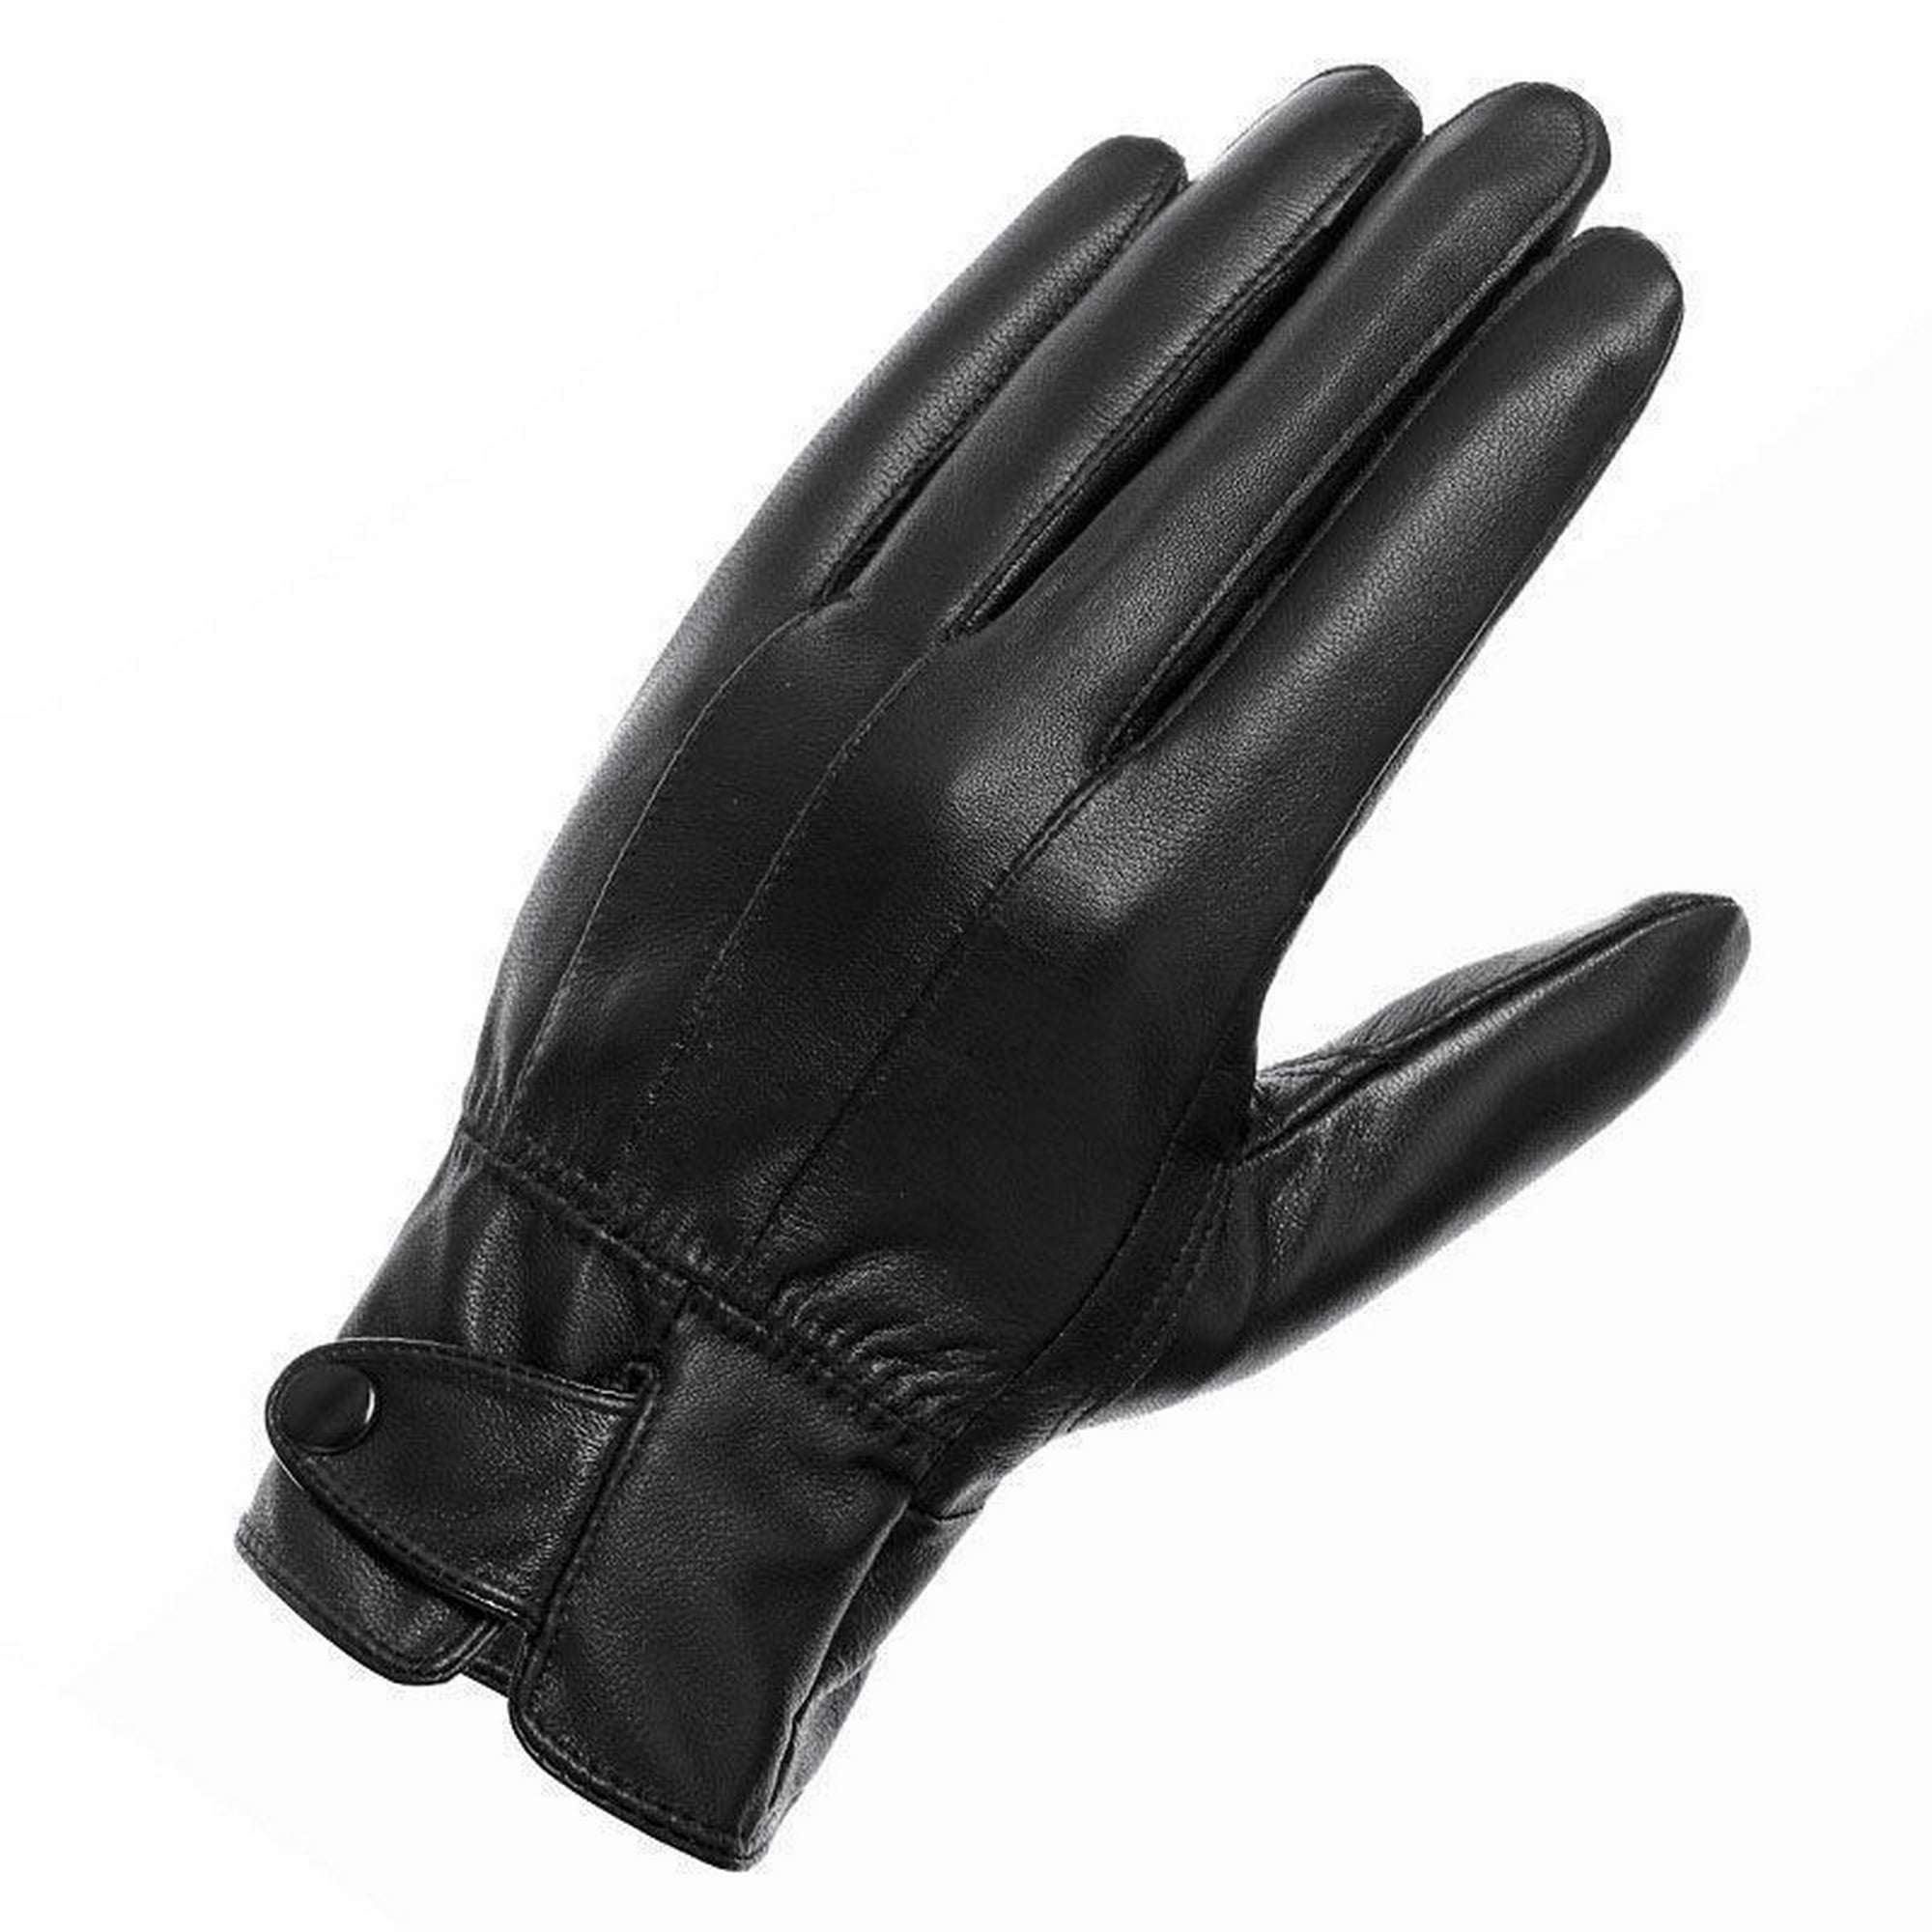  JYDBRT Guantes cortos de cuero con cremallera para mujer,  guantes de invierno de alta calidad para mujer, guantes de cuero mate para  mujer (color : negro, talla : 6.5) : Ropa